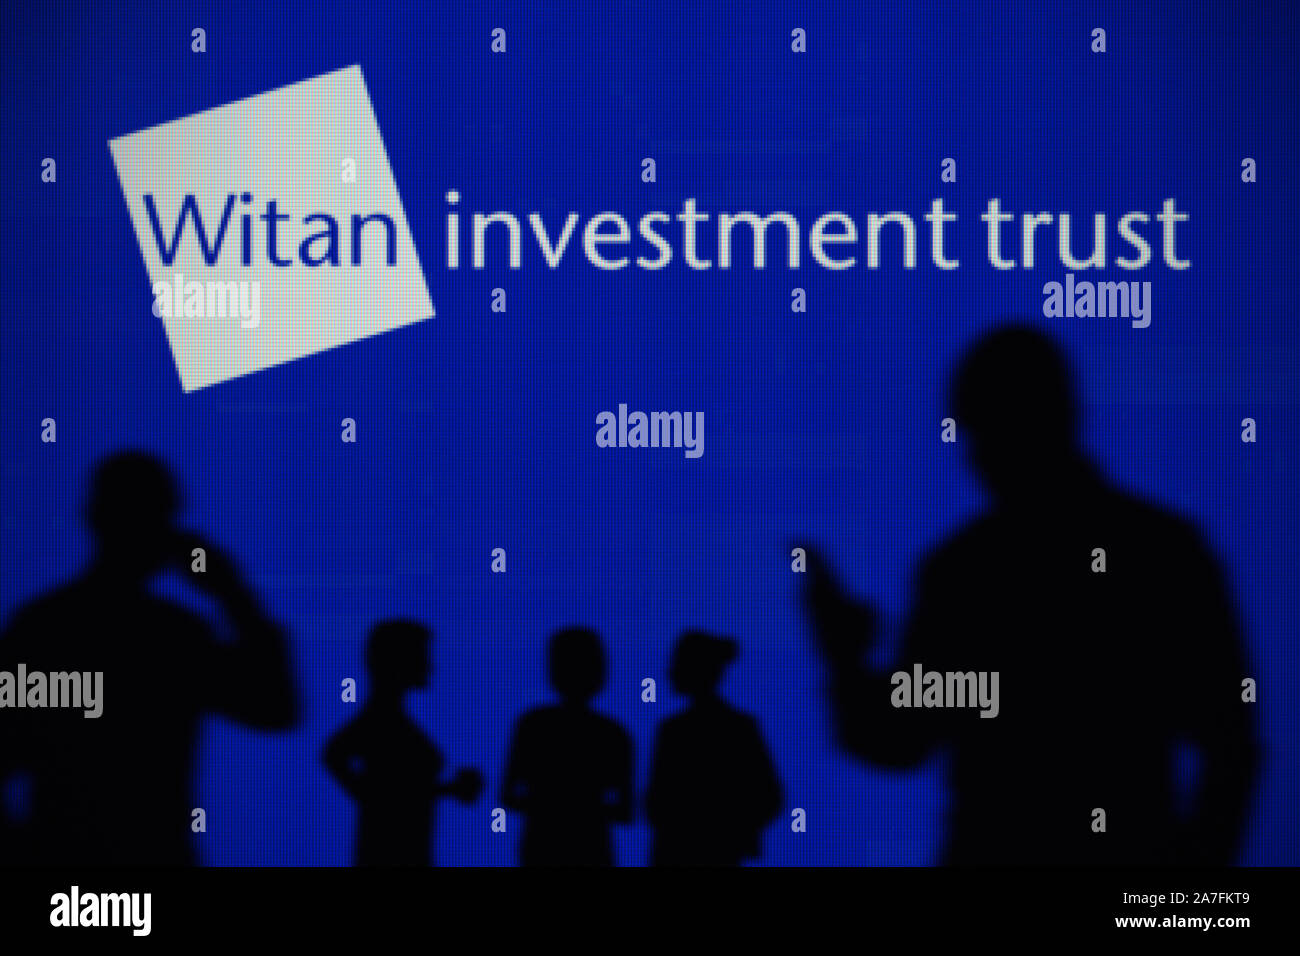 Il Witan Investment Trust logo è visibile su uno schermo a LED in background mentre si profila una persona utilizza uno smartphone (solo uso editoriale) Foto Stock